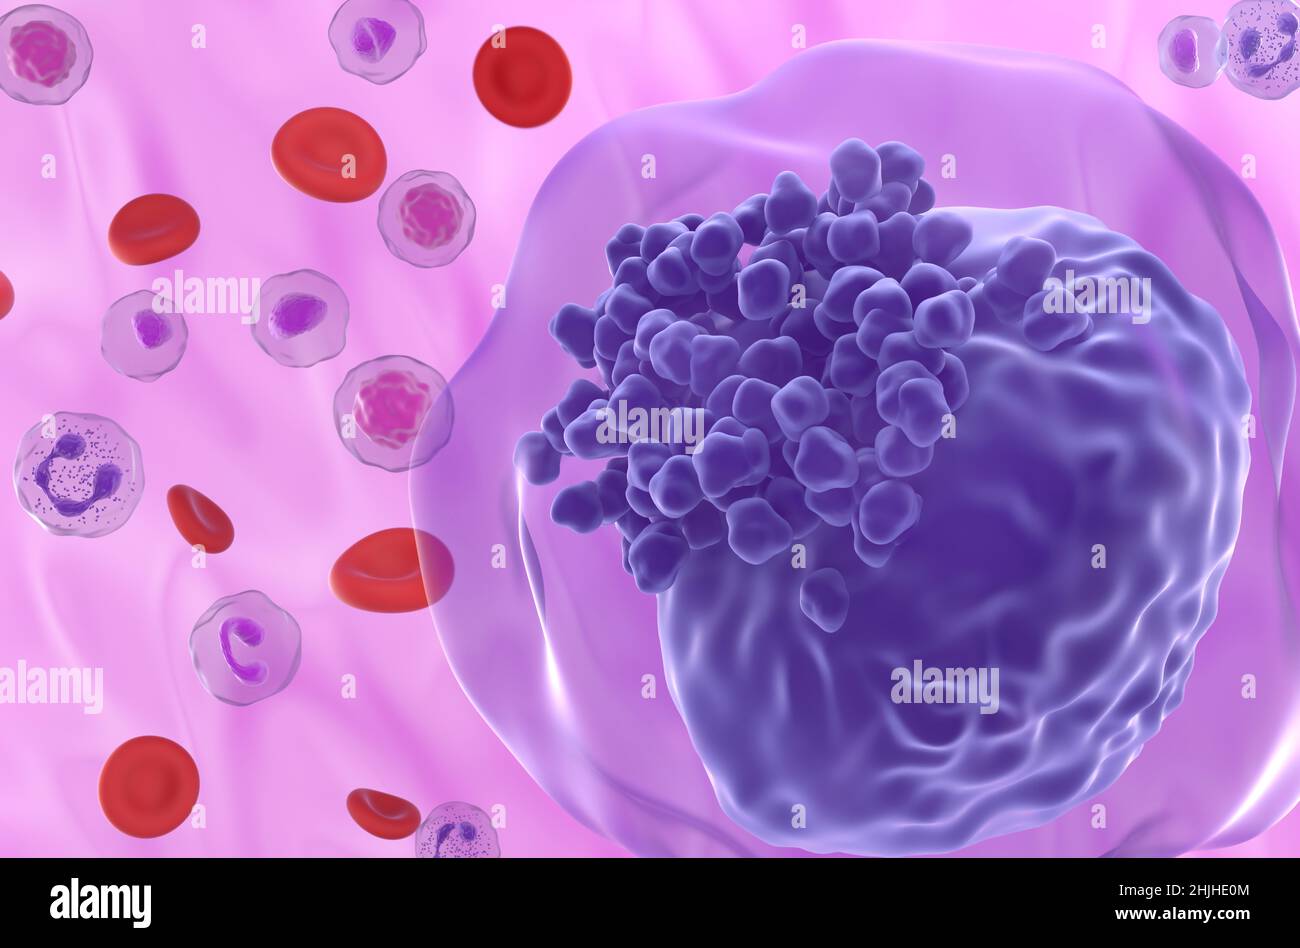 Cellule de leucémie myéloïde aiguë (LMA) dans le flux sanguin - vue en gros plan 3D illustration Banque D'Images